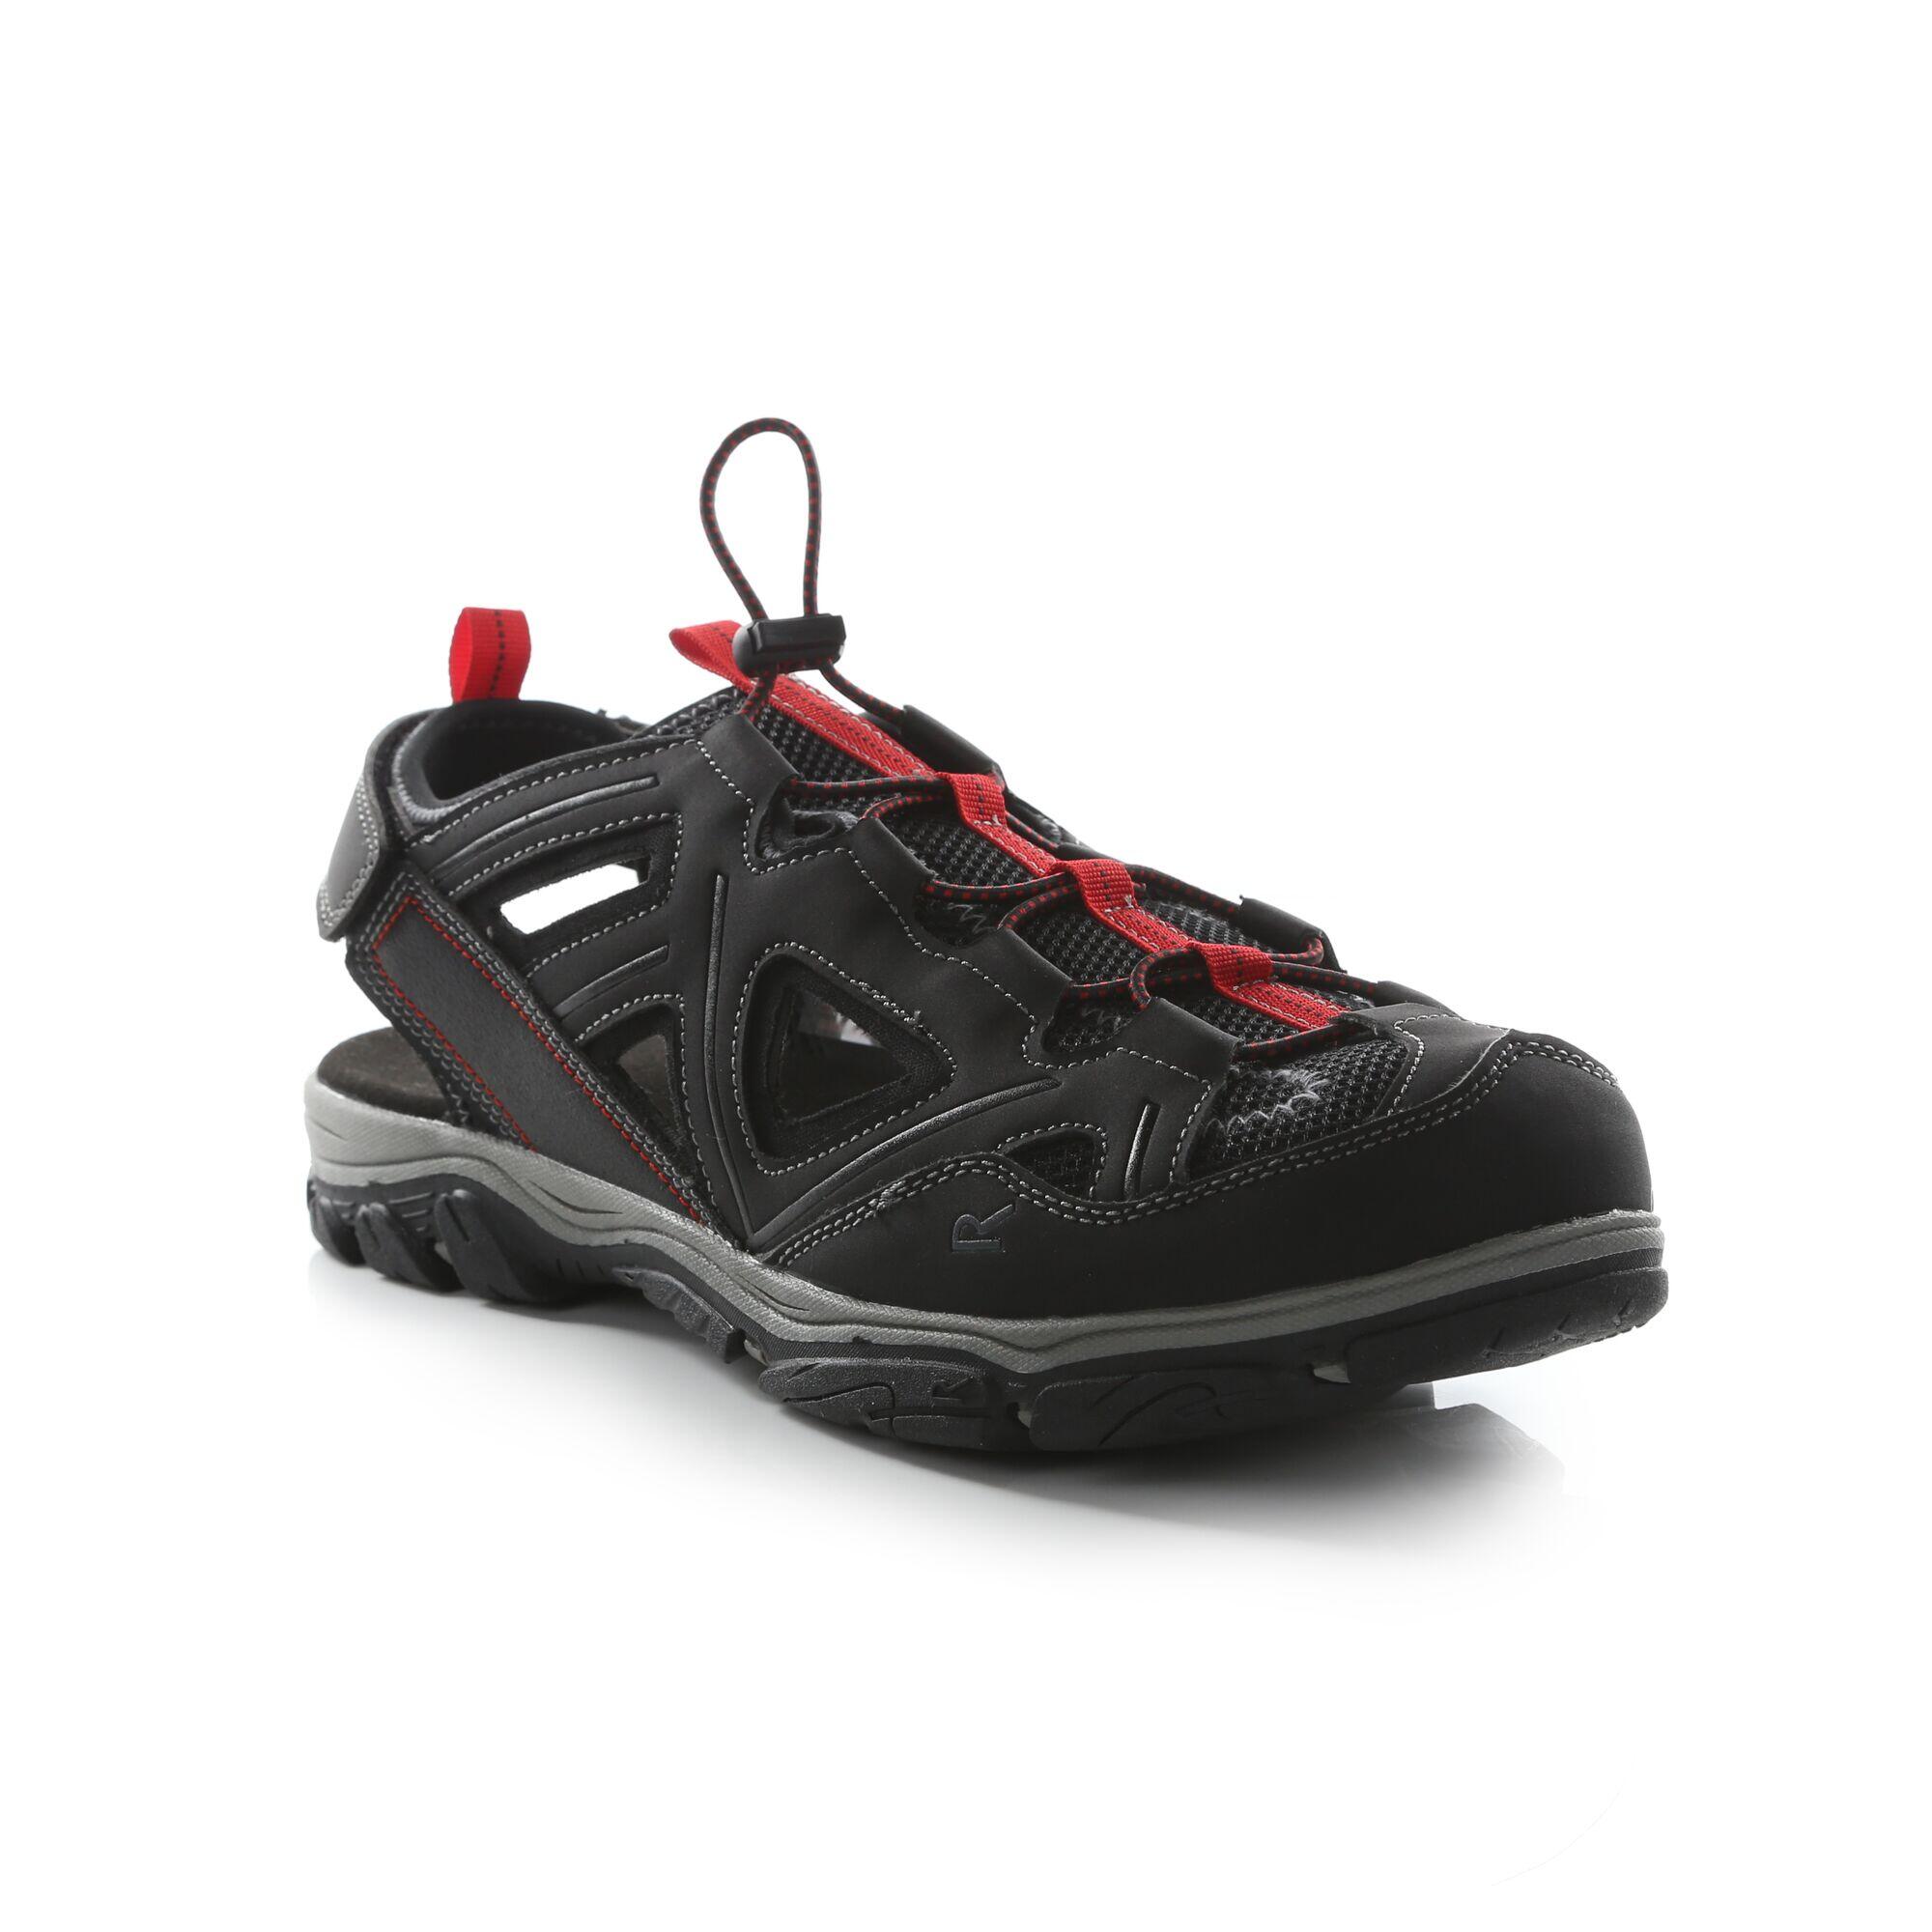 Westshore 3 Men's Hiking Sandals - Black / Red 2/5